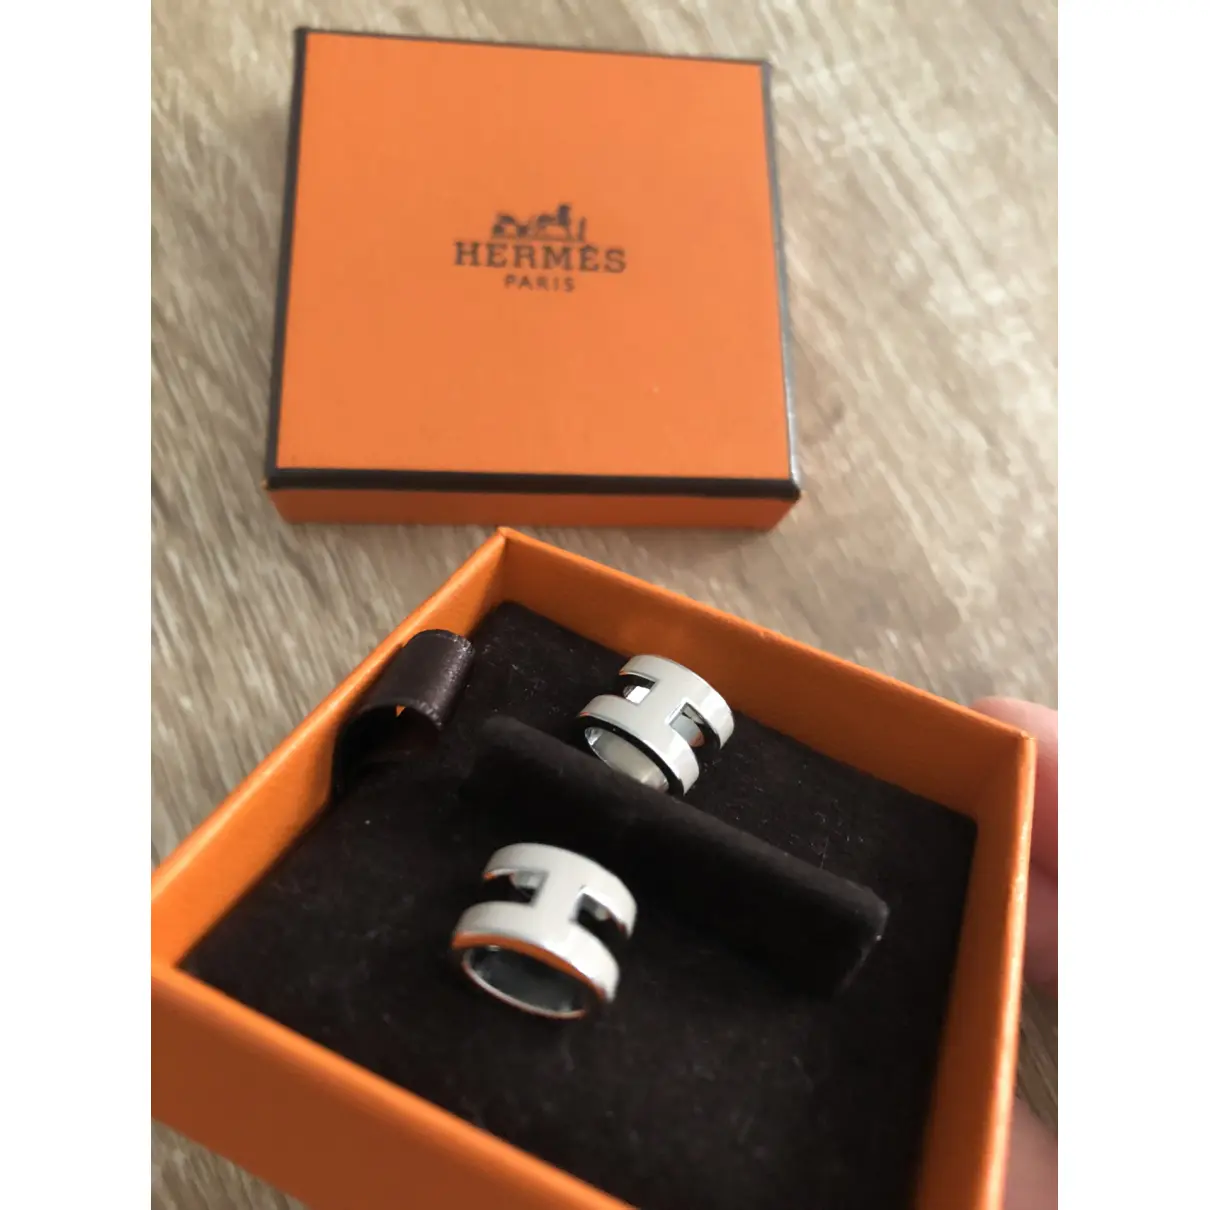 Buy Hermès Pop H platinum earrings online